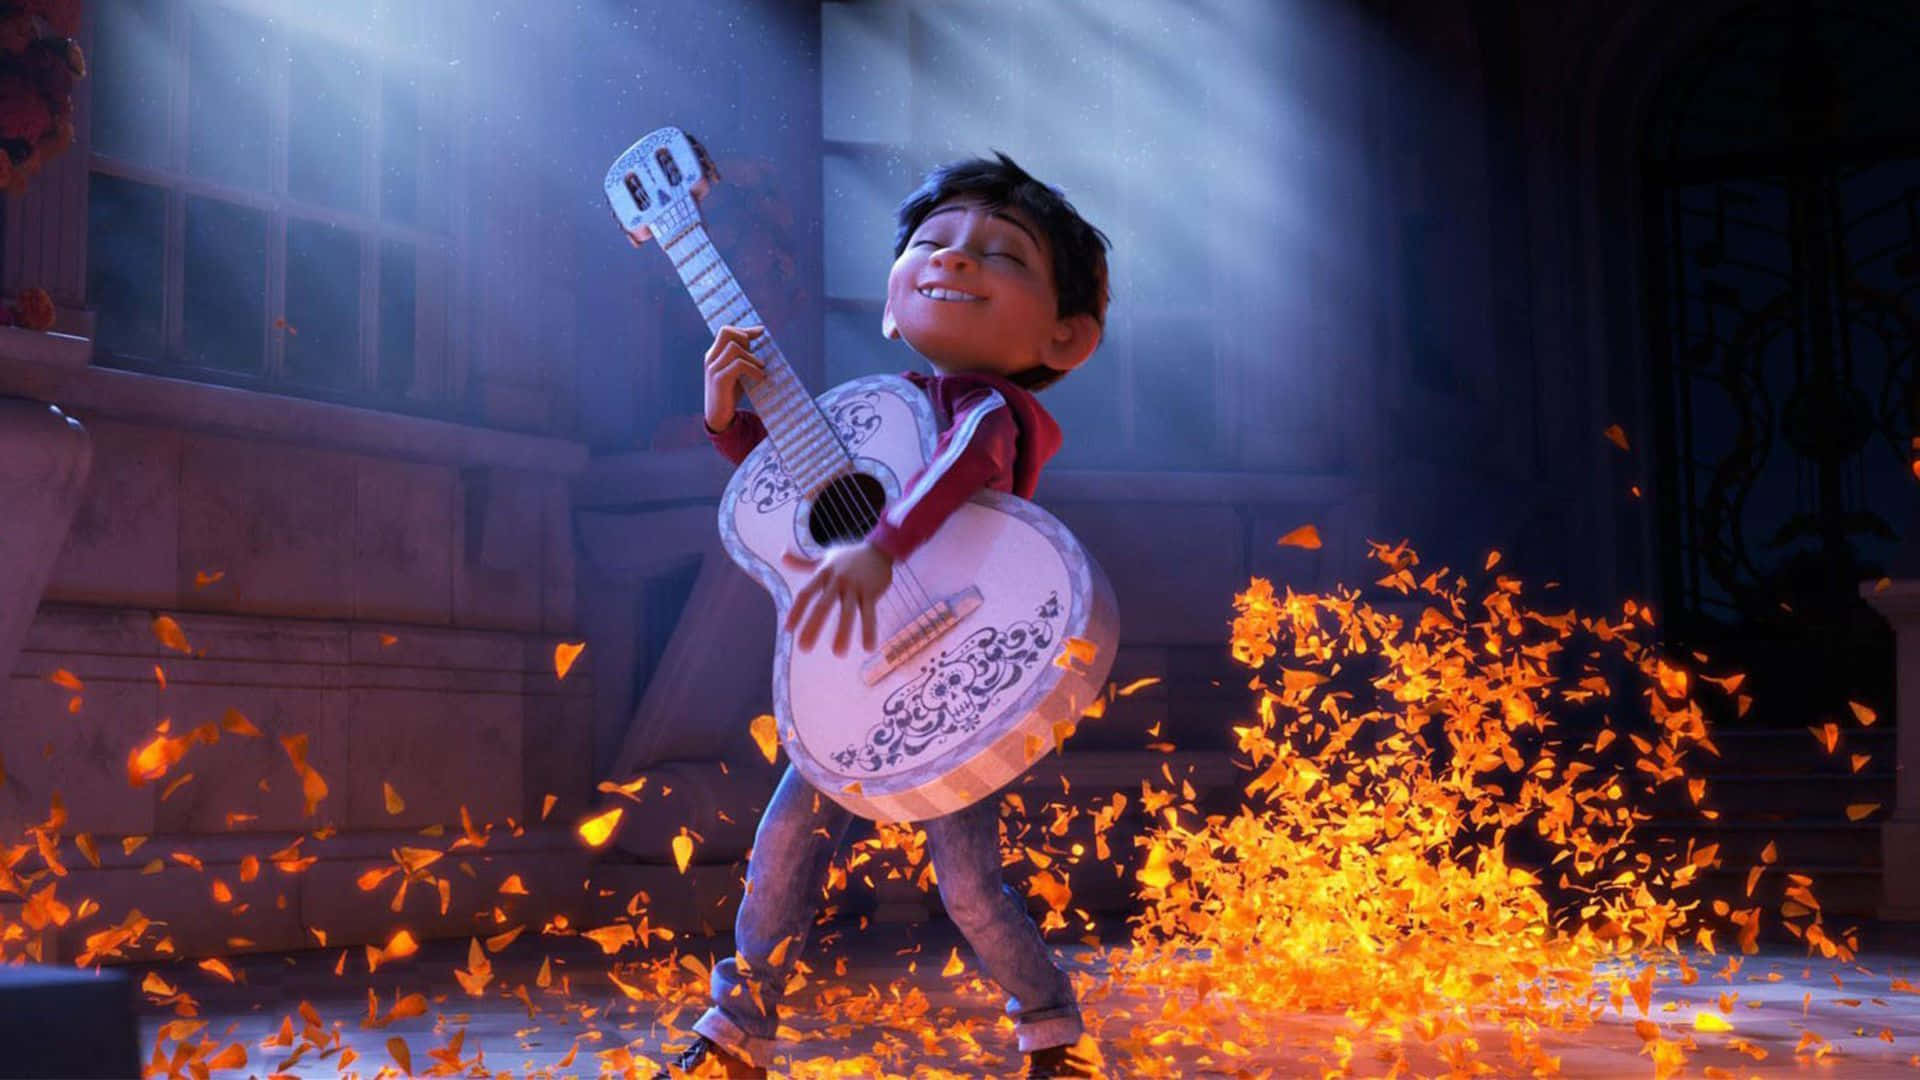 Lafamilia Y La Tradición En El Corazón De Coco, De Pixar. Fondo de pantalla